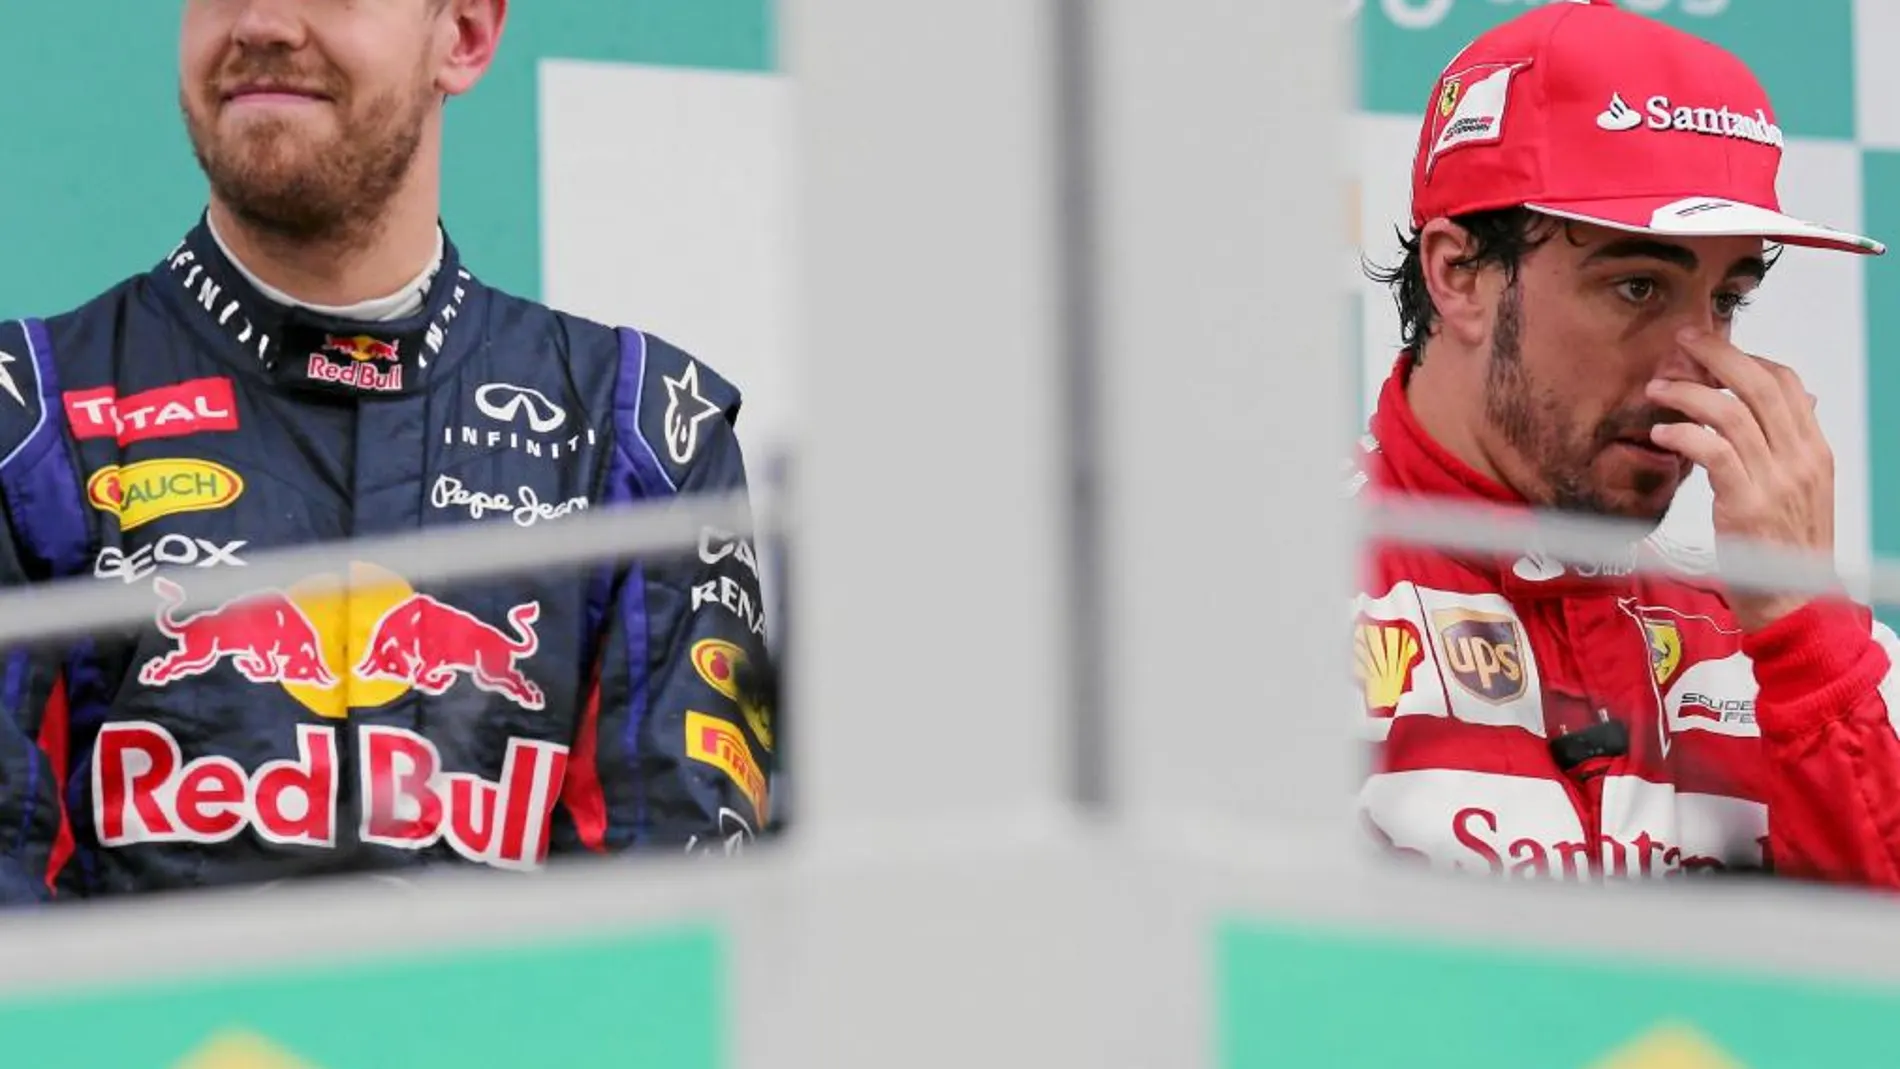 Vettel y Alonso volvieron a compartir podio en el Gran Premio de Brasil. El alemán logró su novena victoria consecutiva